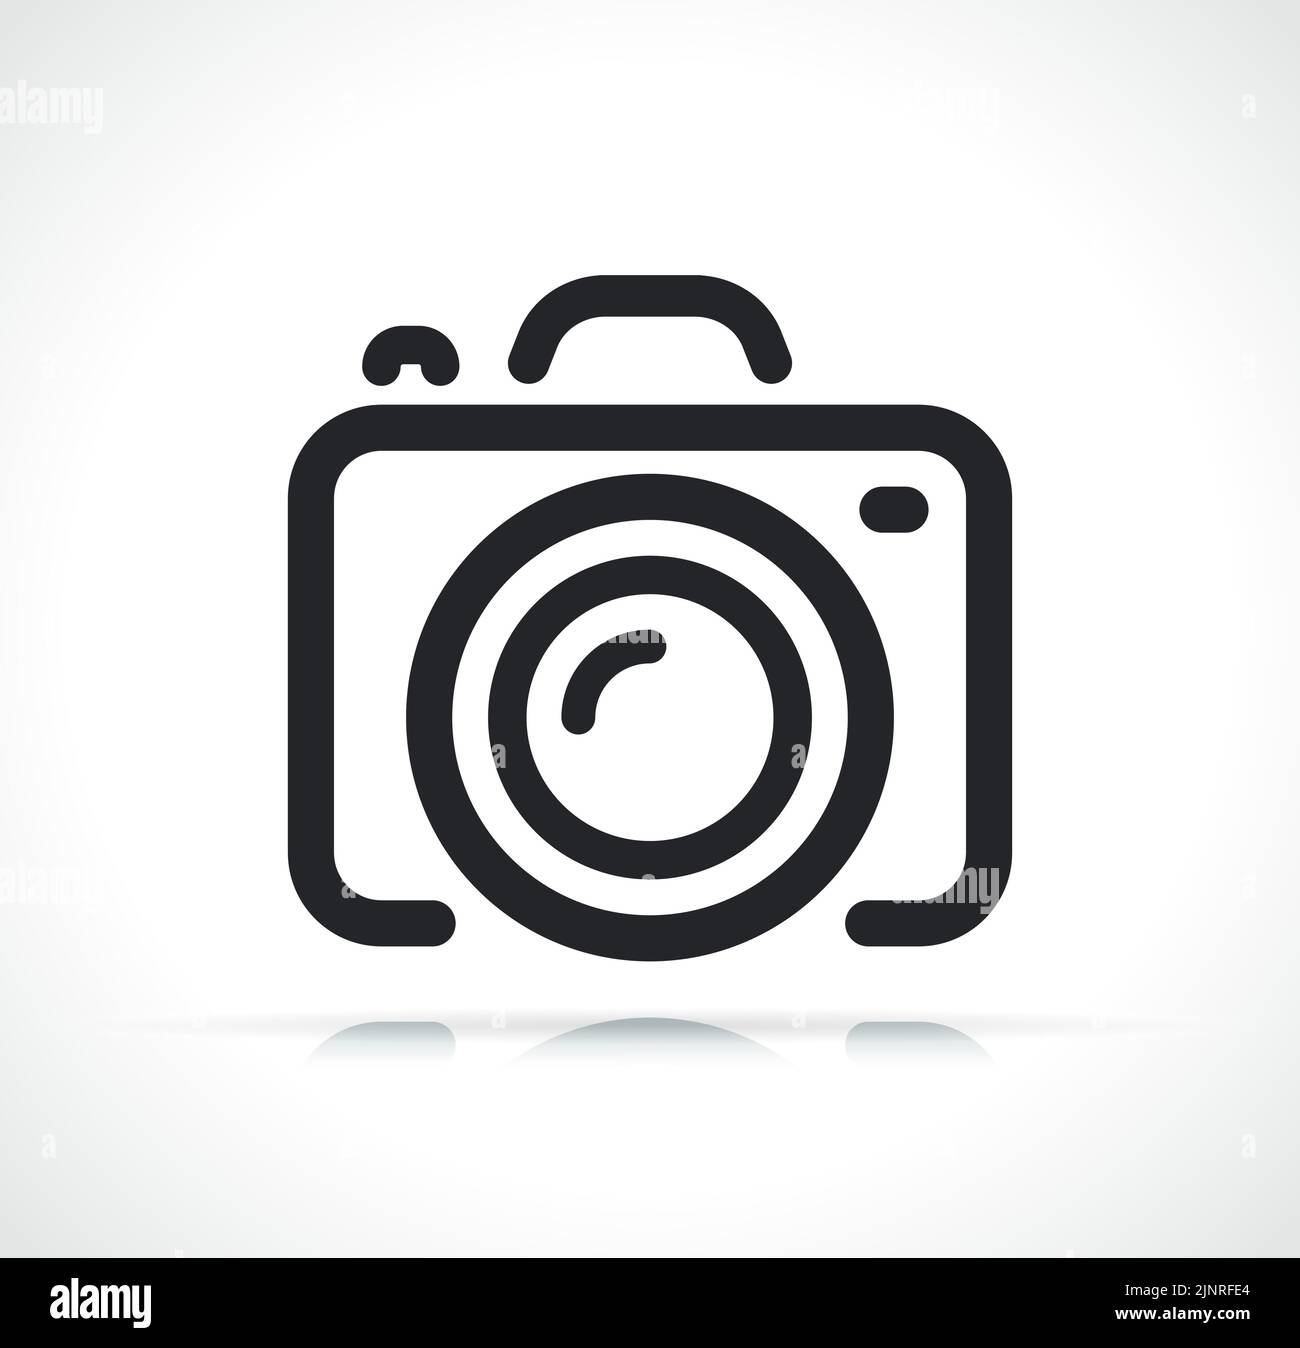 immagine dell'icona a linea sottile della fotocamera o della fotocamera Illustrazione Vettoriale